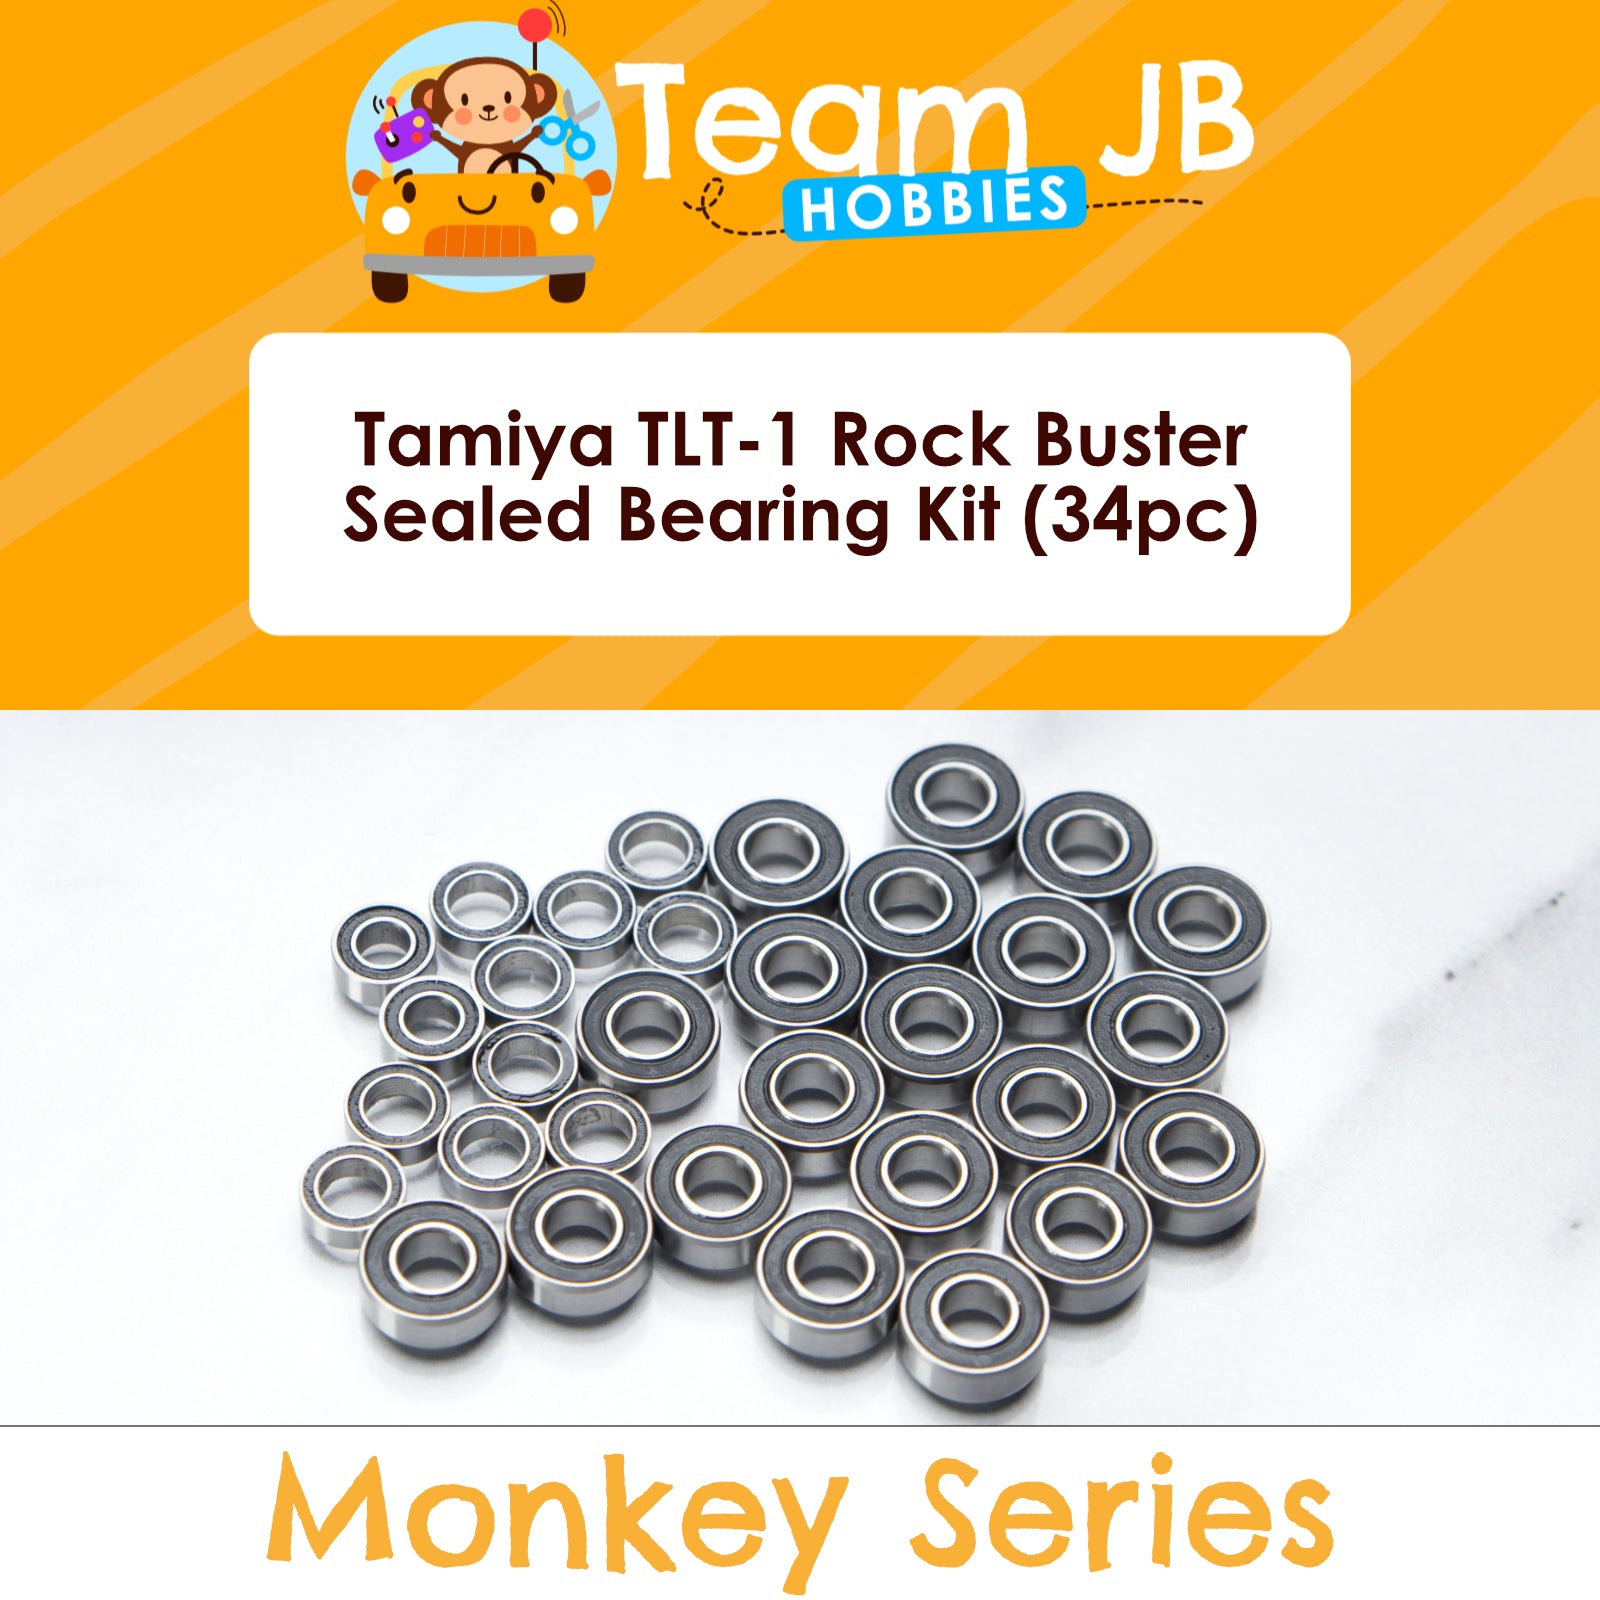 Tamiya TLT-1 Rock Buster - Sealed Bearing Kit